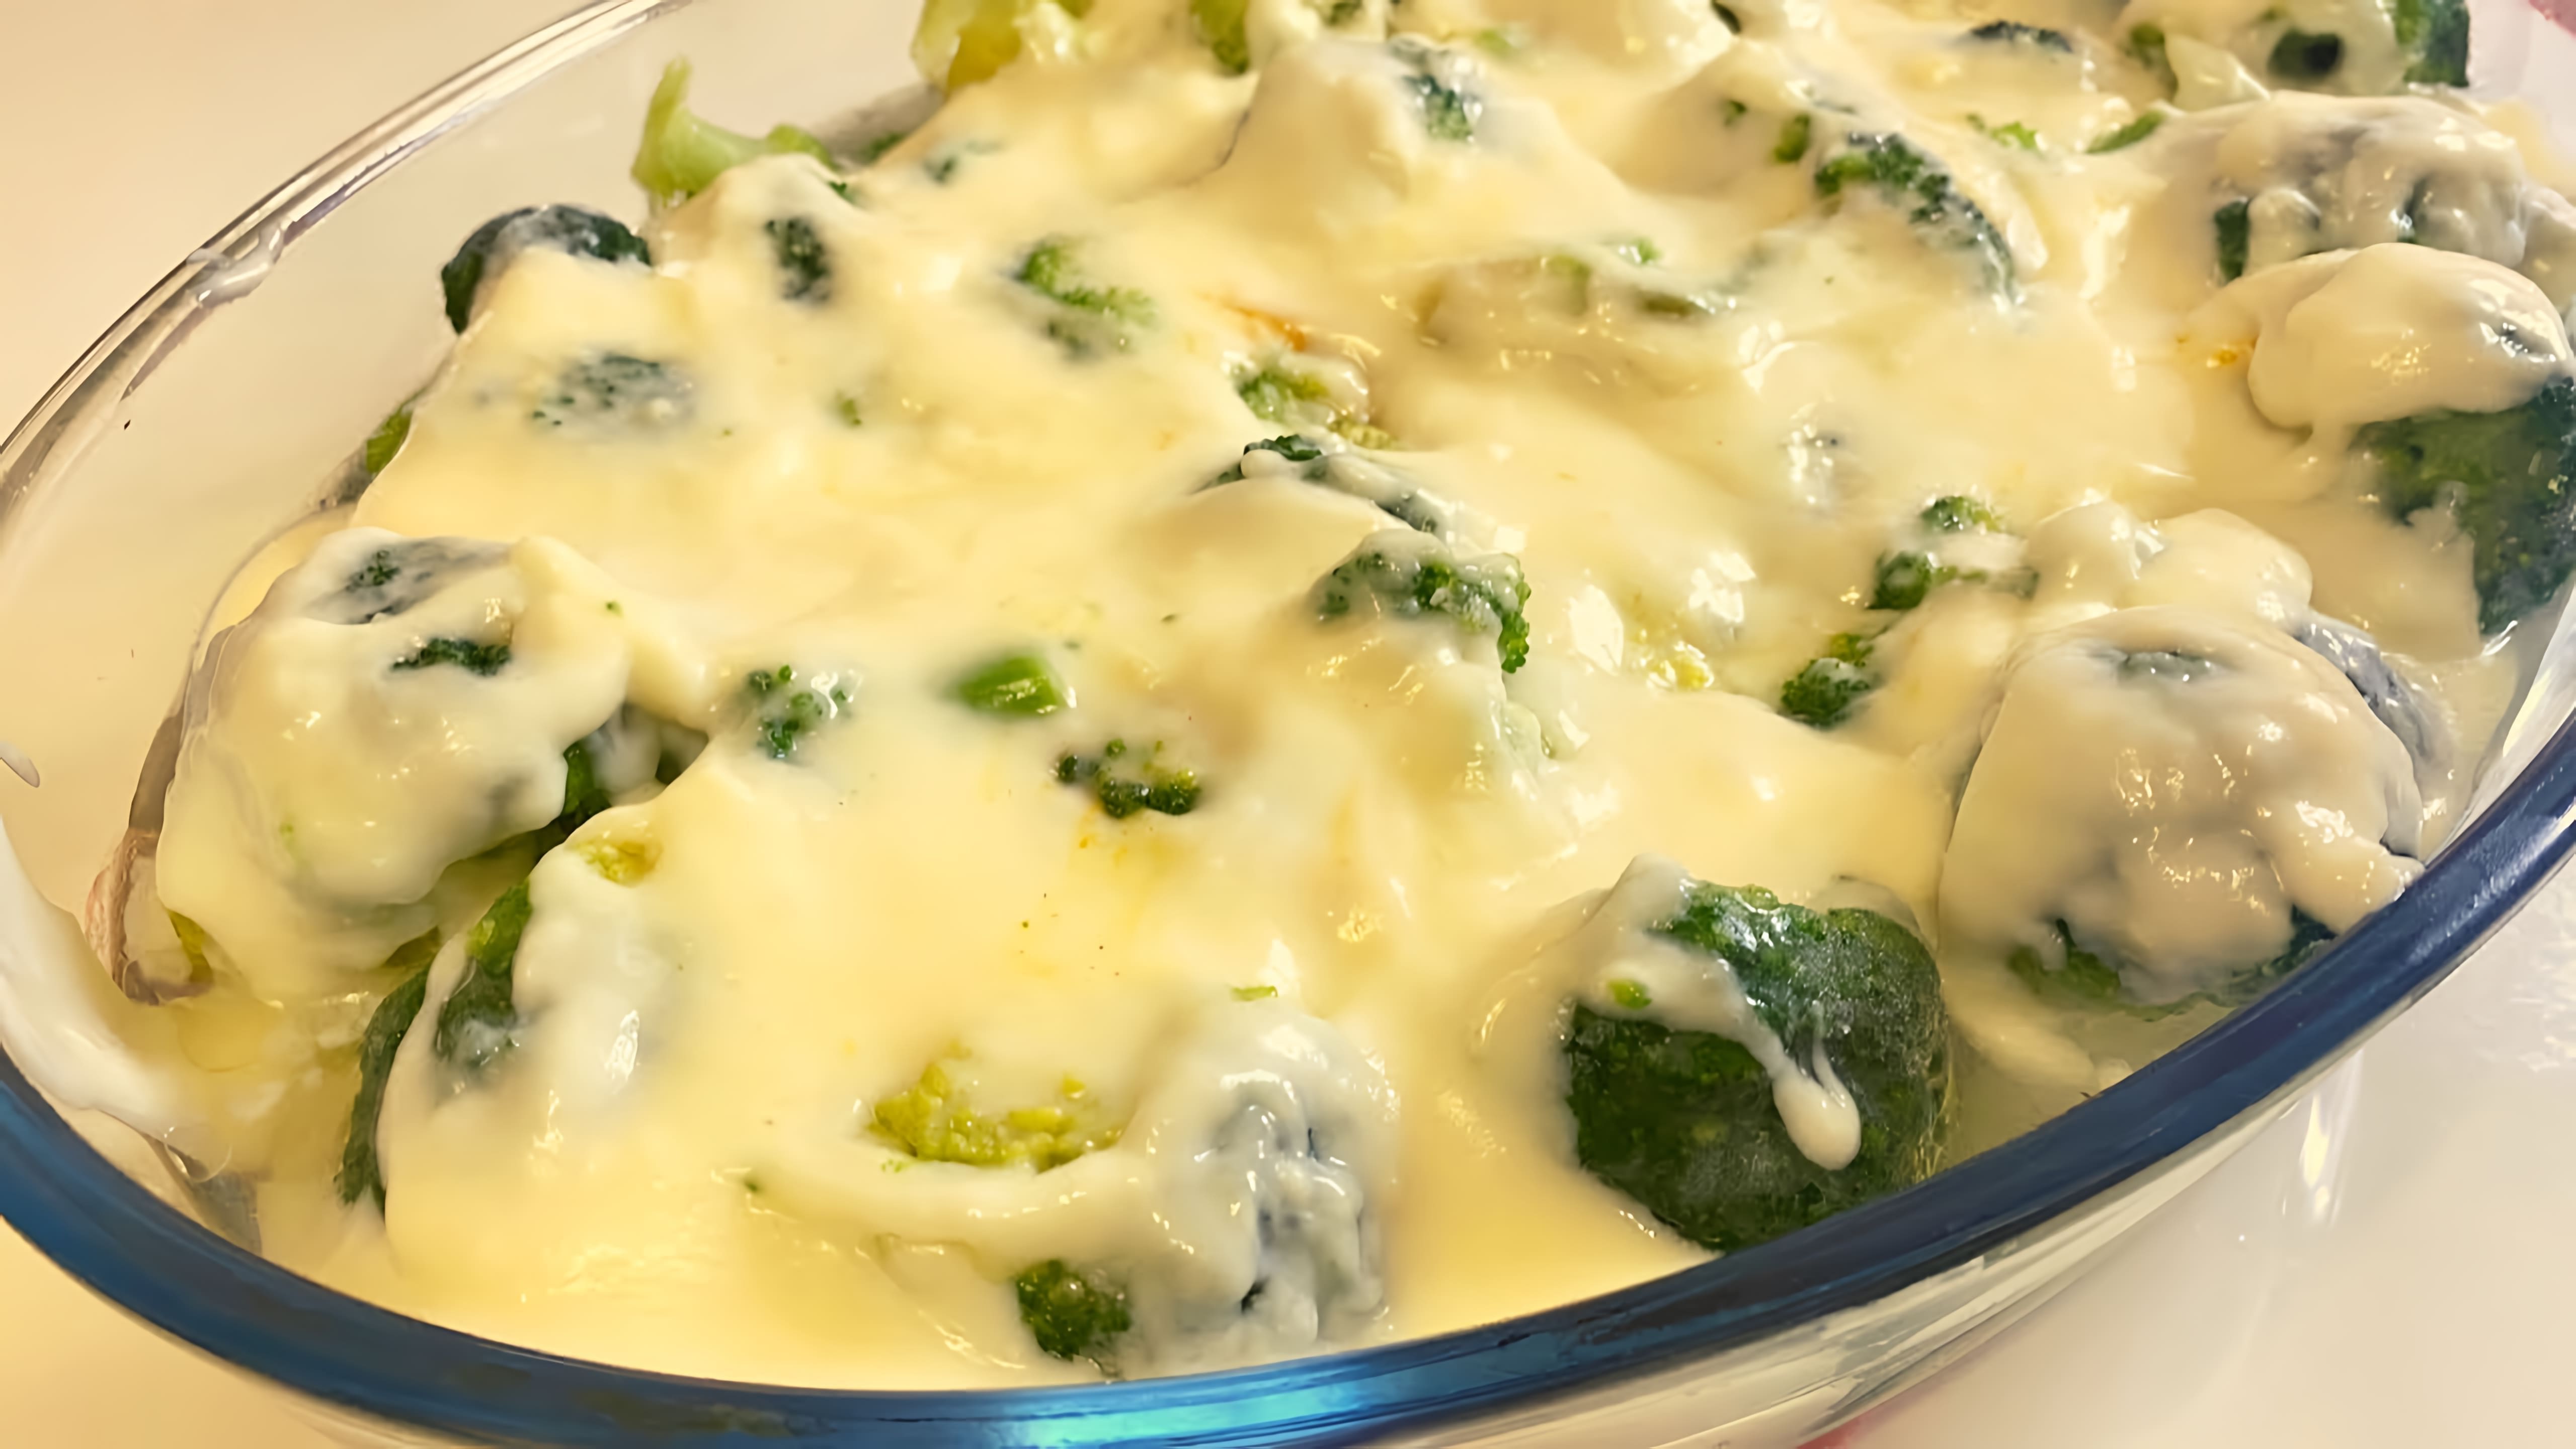 В этом видео демонстрируется рецепт приготовления запеченной брокколи в сливочно-сырном соусе